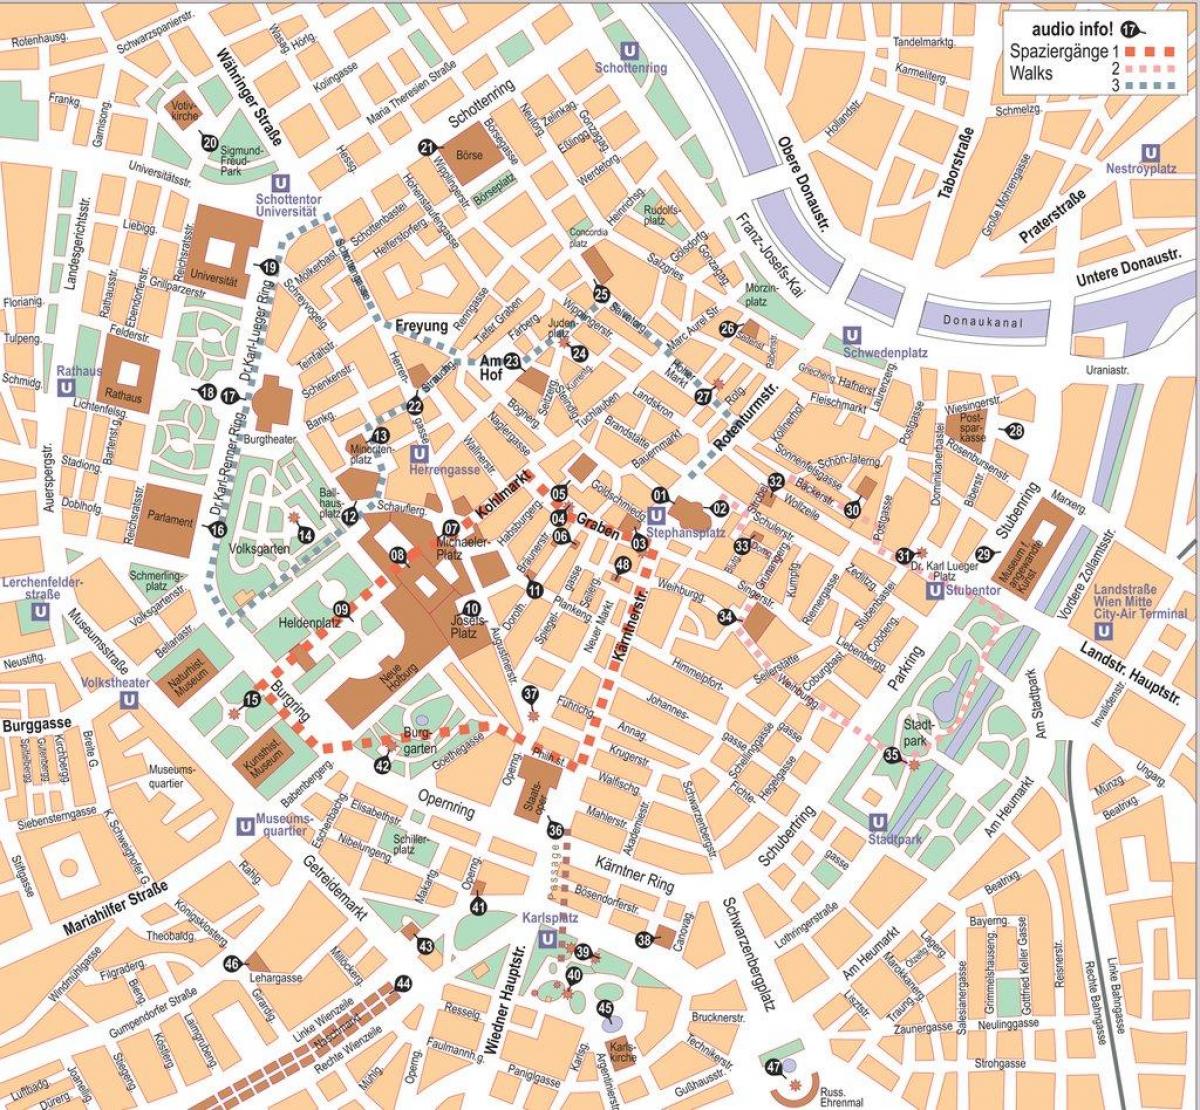 Mapa de Wien, o centro de